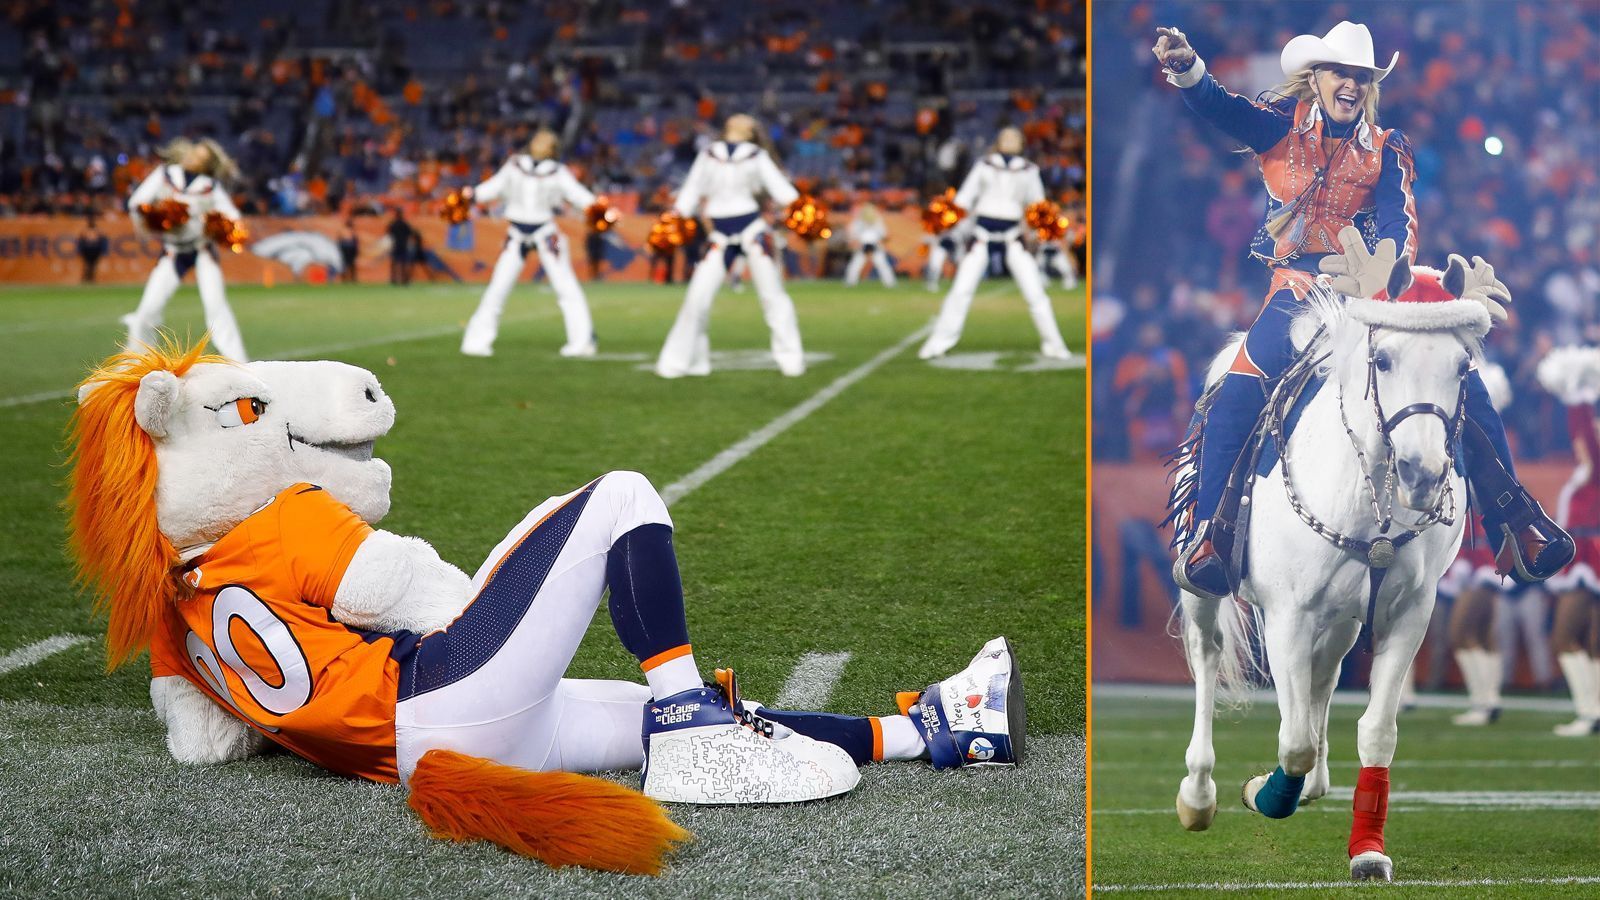 
                <strong>Denver Broncos: Miles und Thunder II</strong><br>
                Wie die Browns setzen auch die Denver Broncos auf die Kombination Plüschtier/lebendiges Tier. Thunder II ist ein Araber-Hengst, der von einer Cheerleaderin geritten wird. Miles hingegen ist ein mannsgroßes Plüschpferd.
              